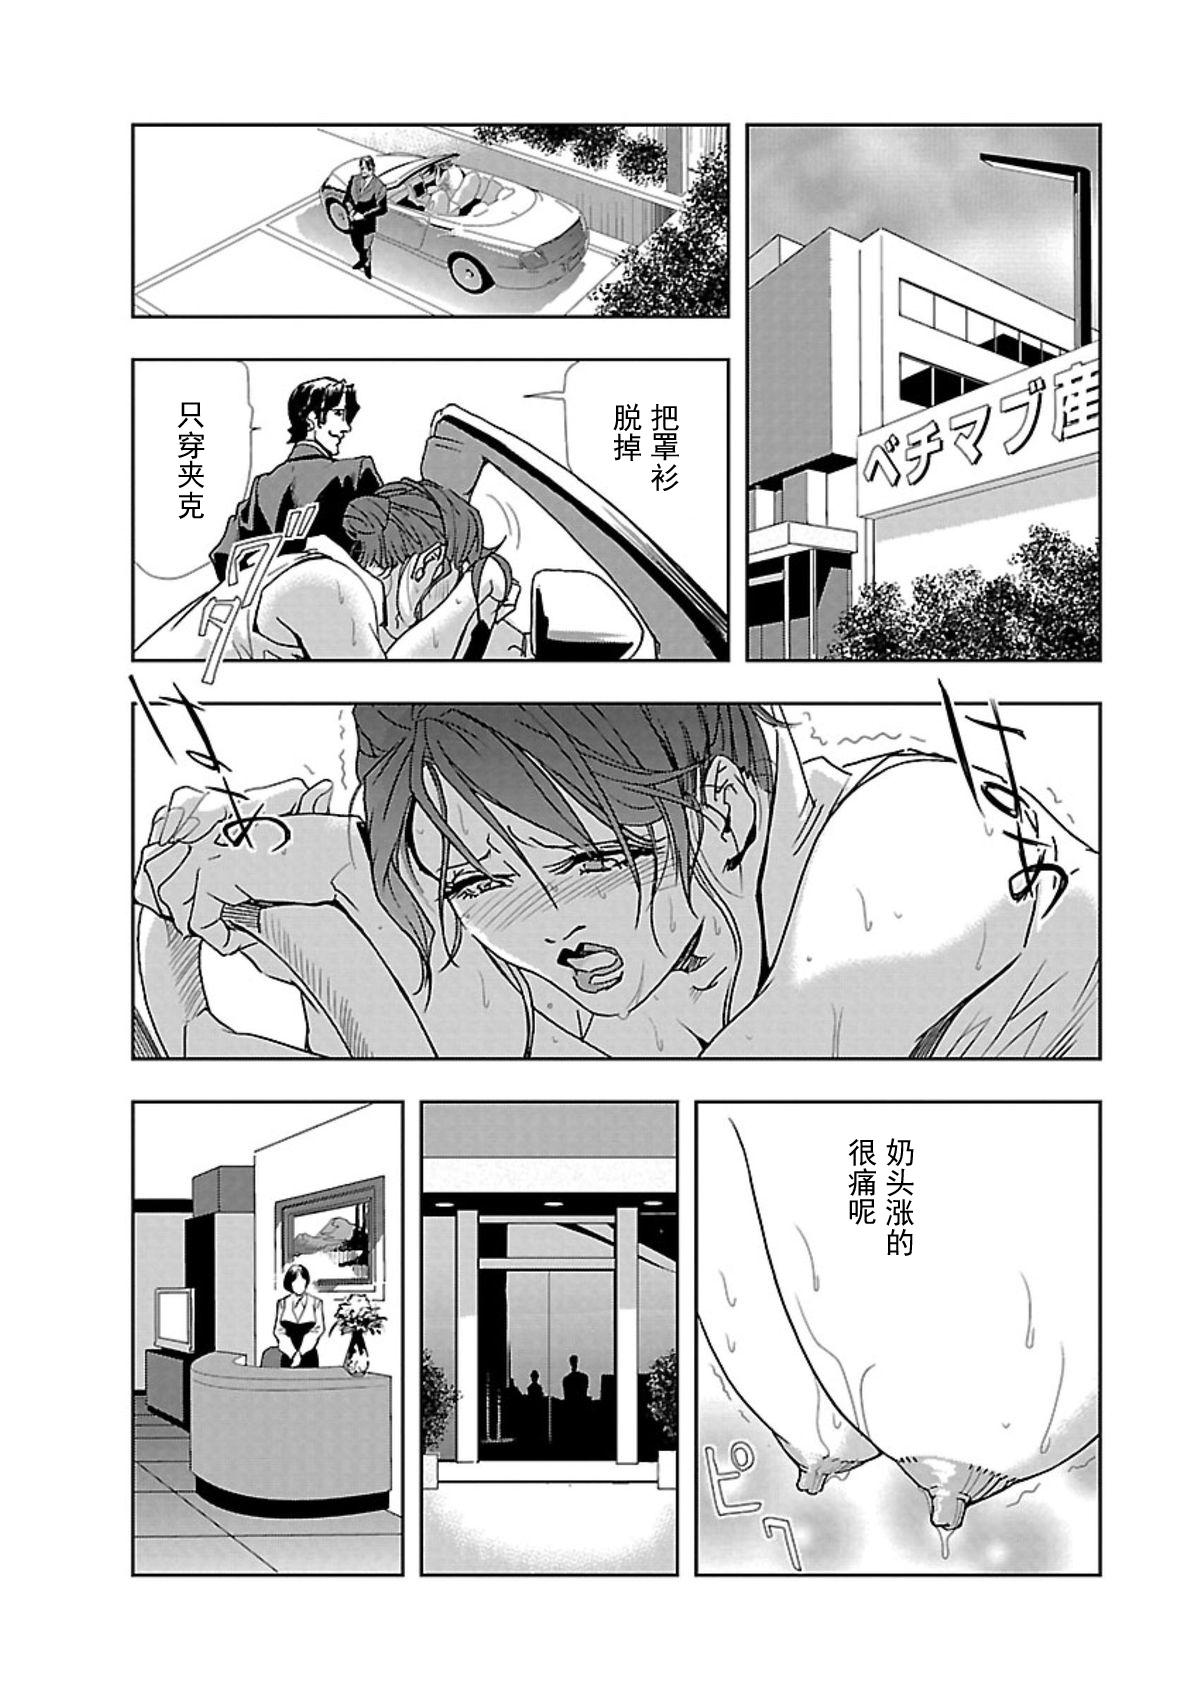 【不可视汉化】[Misaki Yukihiro] Nikuhisyo Yukiko chapter 01  [Digital] 10